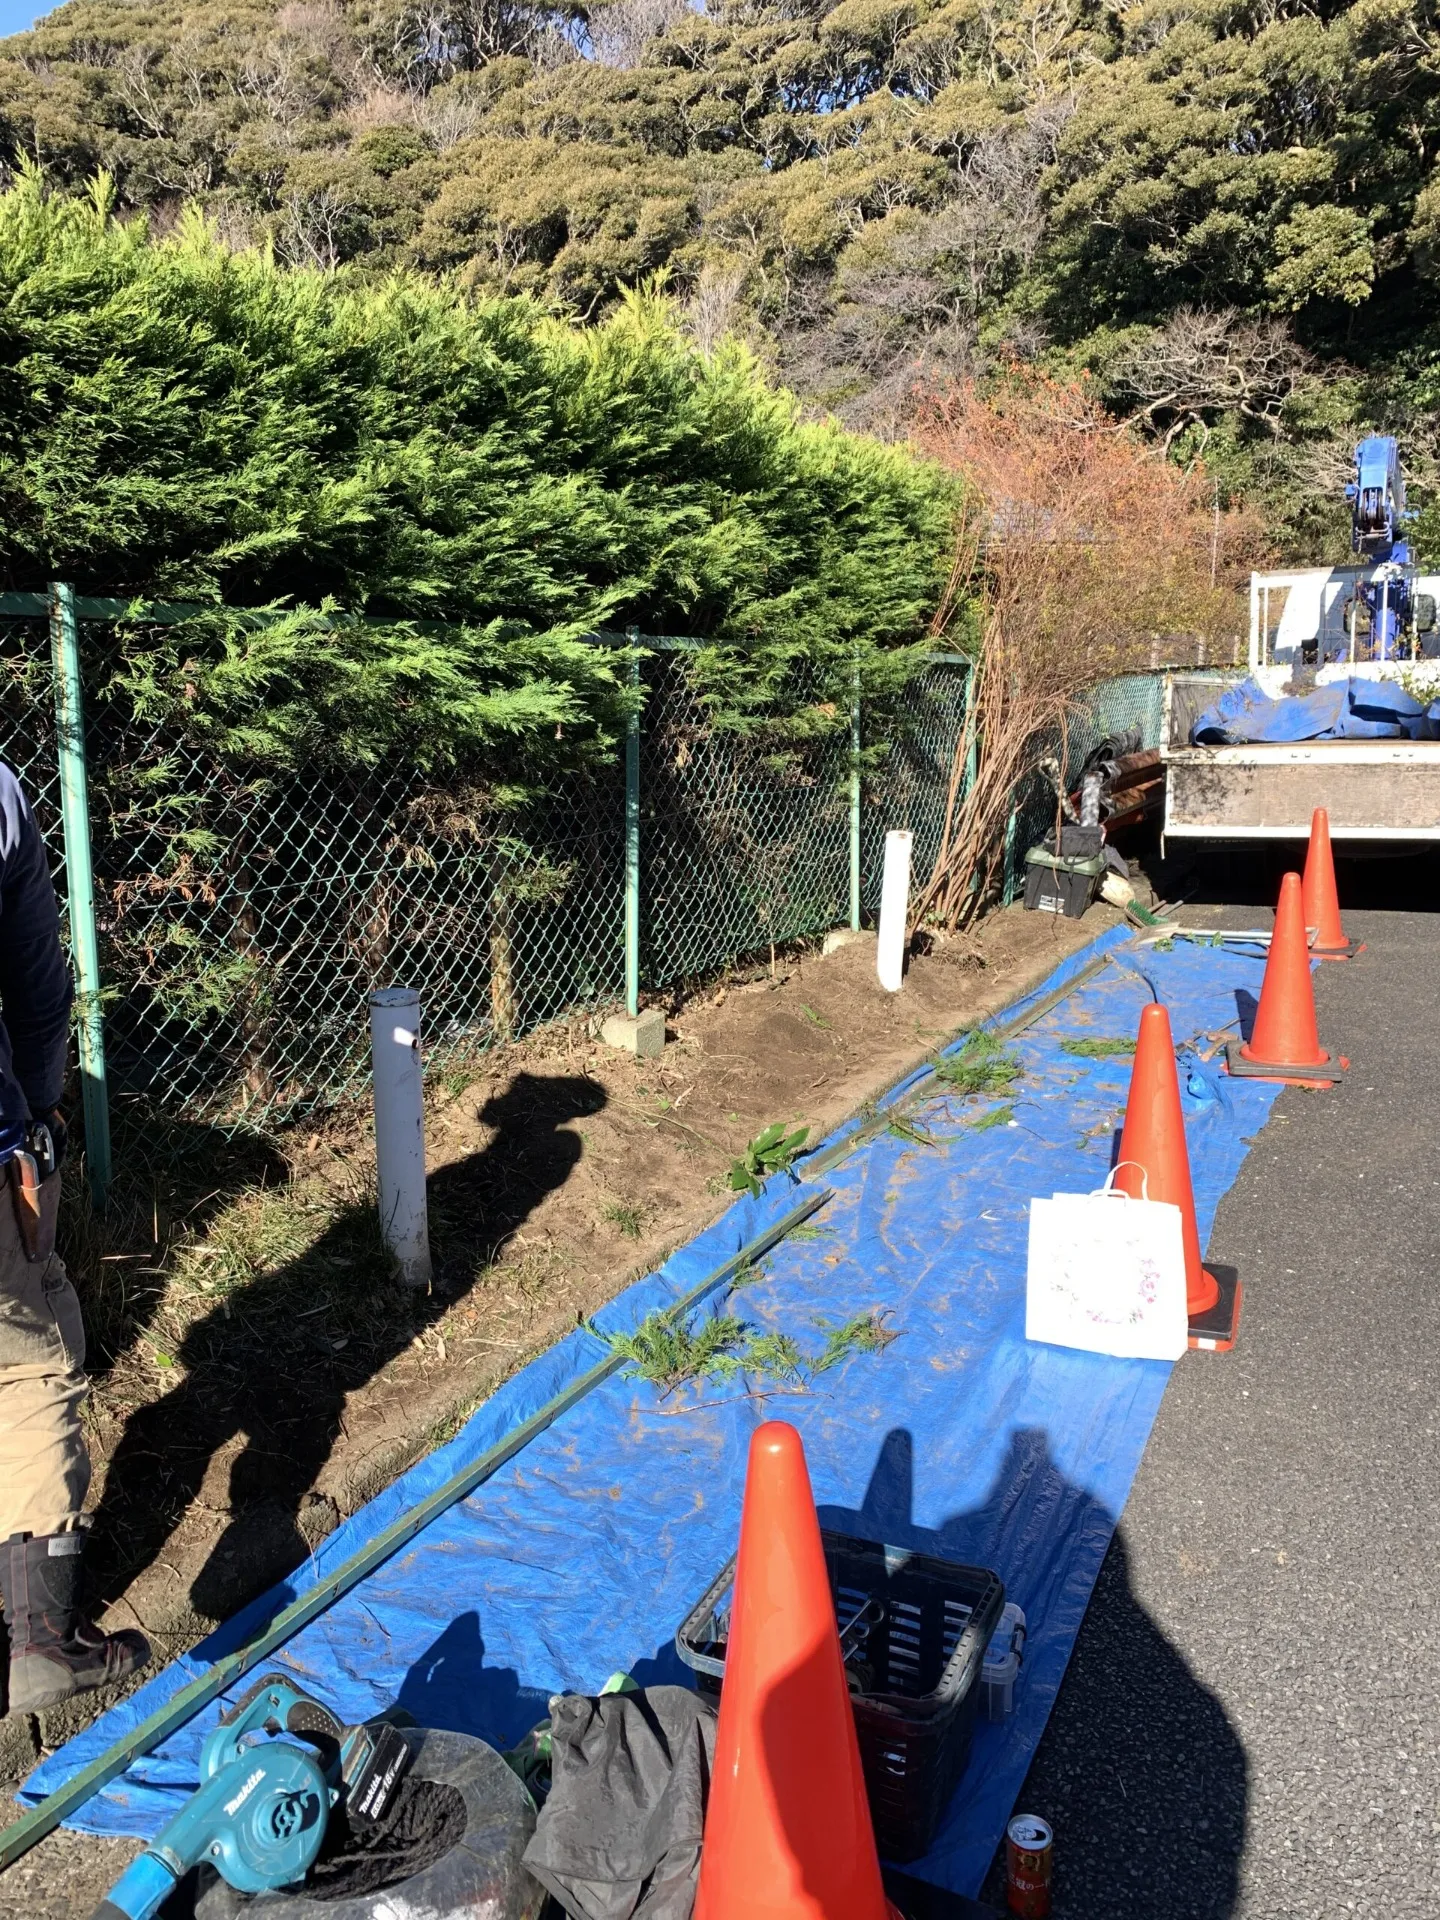 鎌倉市の外構工事で給排水管の設置と植木の移動を行いました